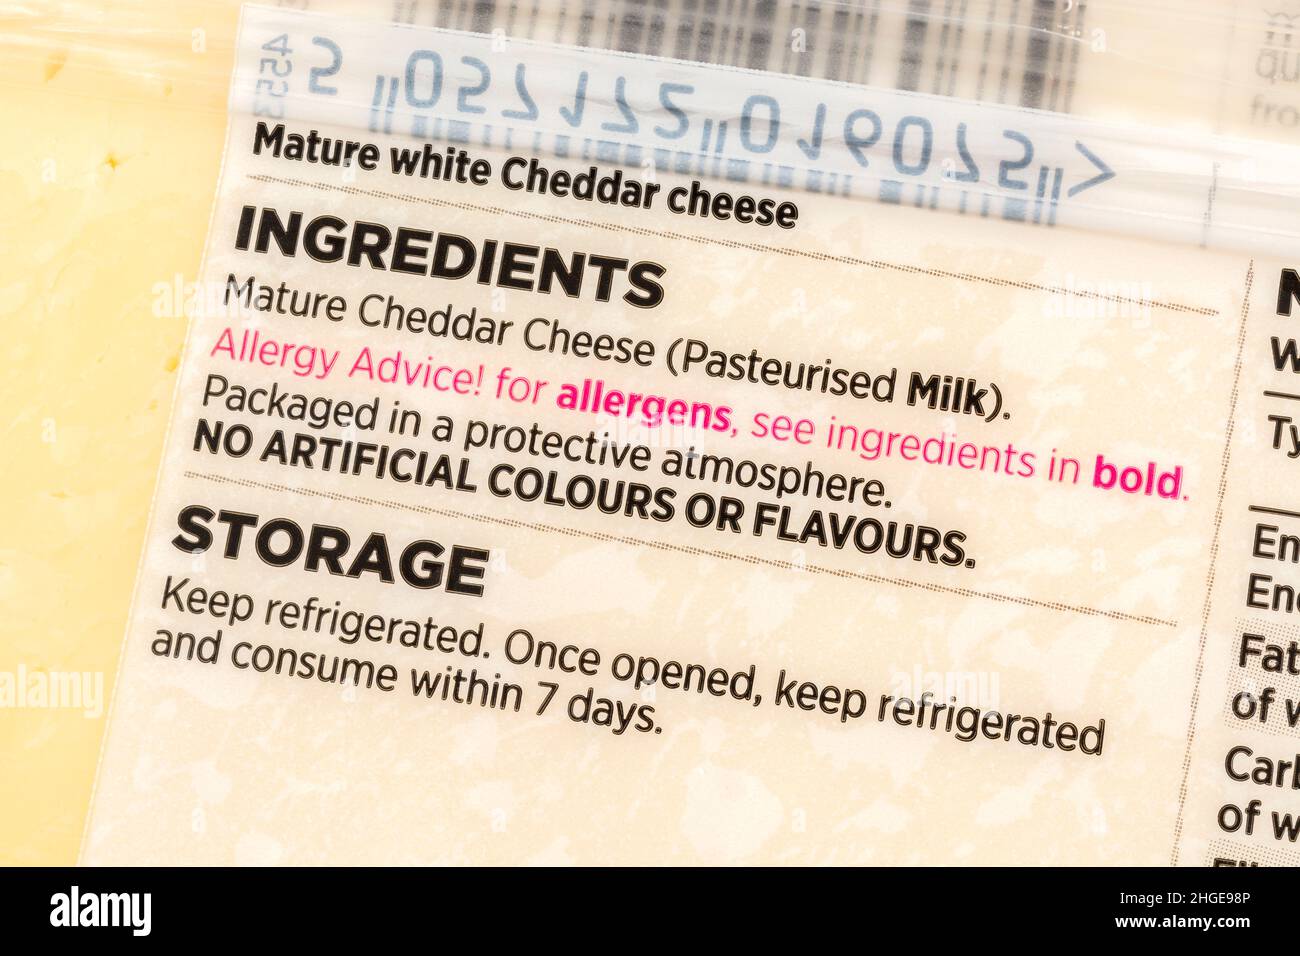 Primer plano de los ingredientes de la etiqueta de queso cheddar de marca propia de ASDA con advertencia de alérgenos de tipo rojo. Para alergias a alimentos, y posiblemente dieta sin lácteos. Foto de stock